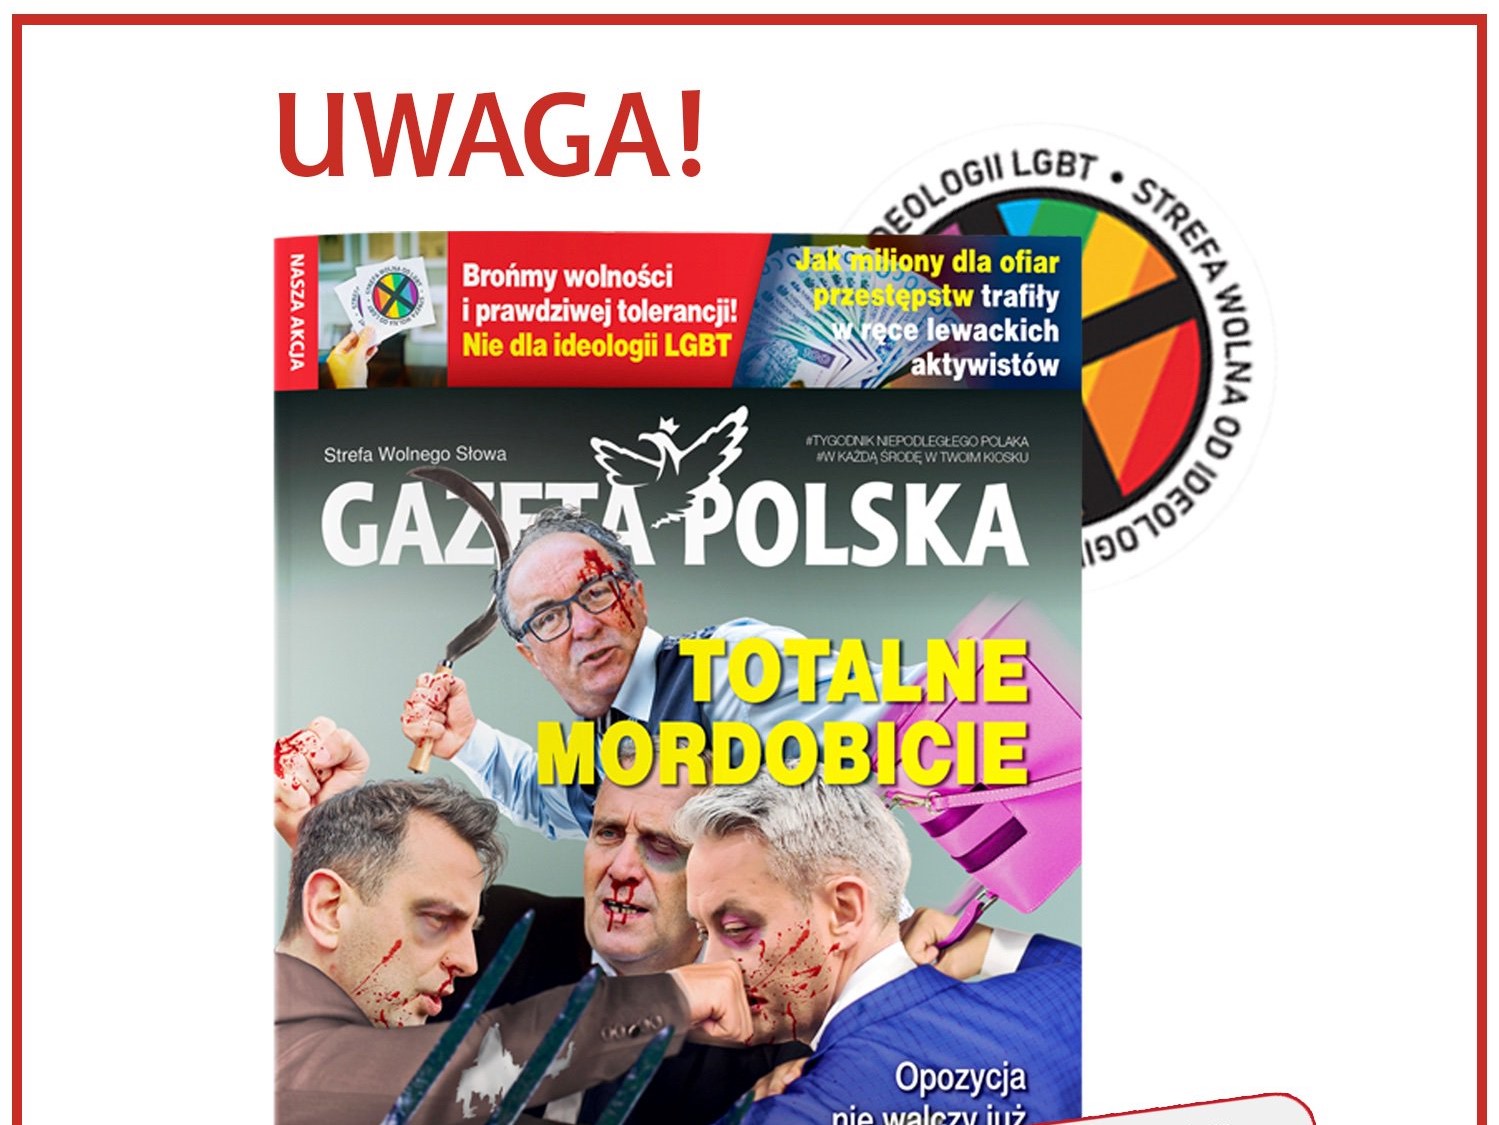 okładka gazety polskiej LGBT - TT: Gazeta Polska